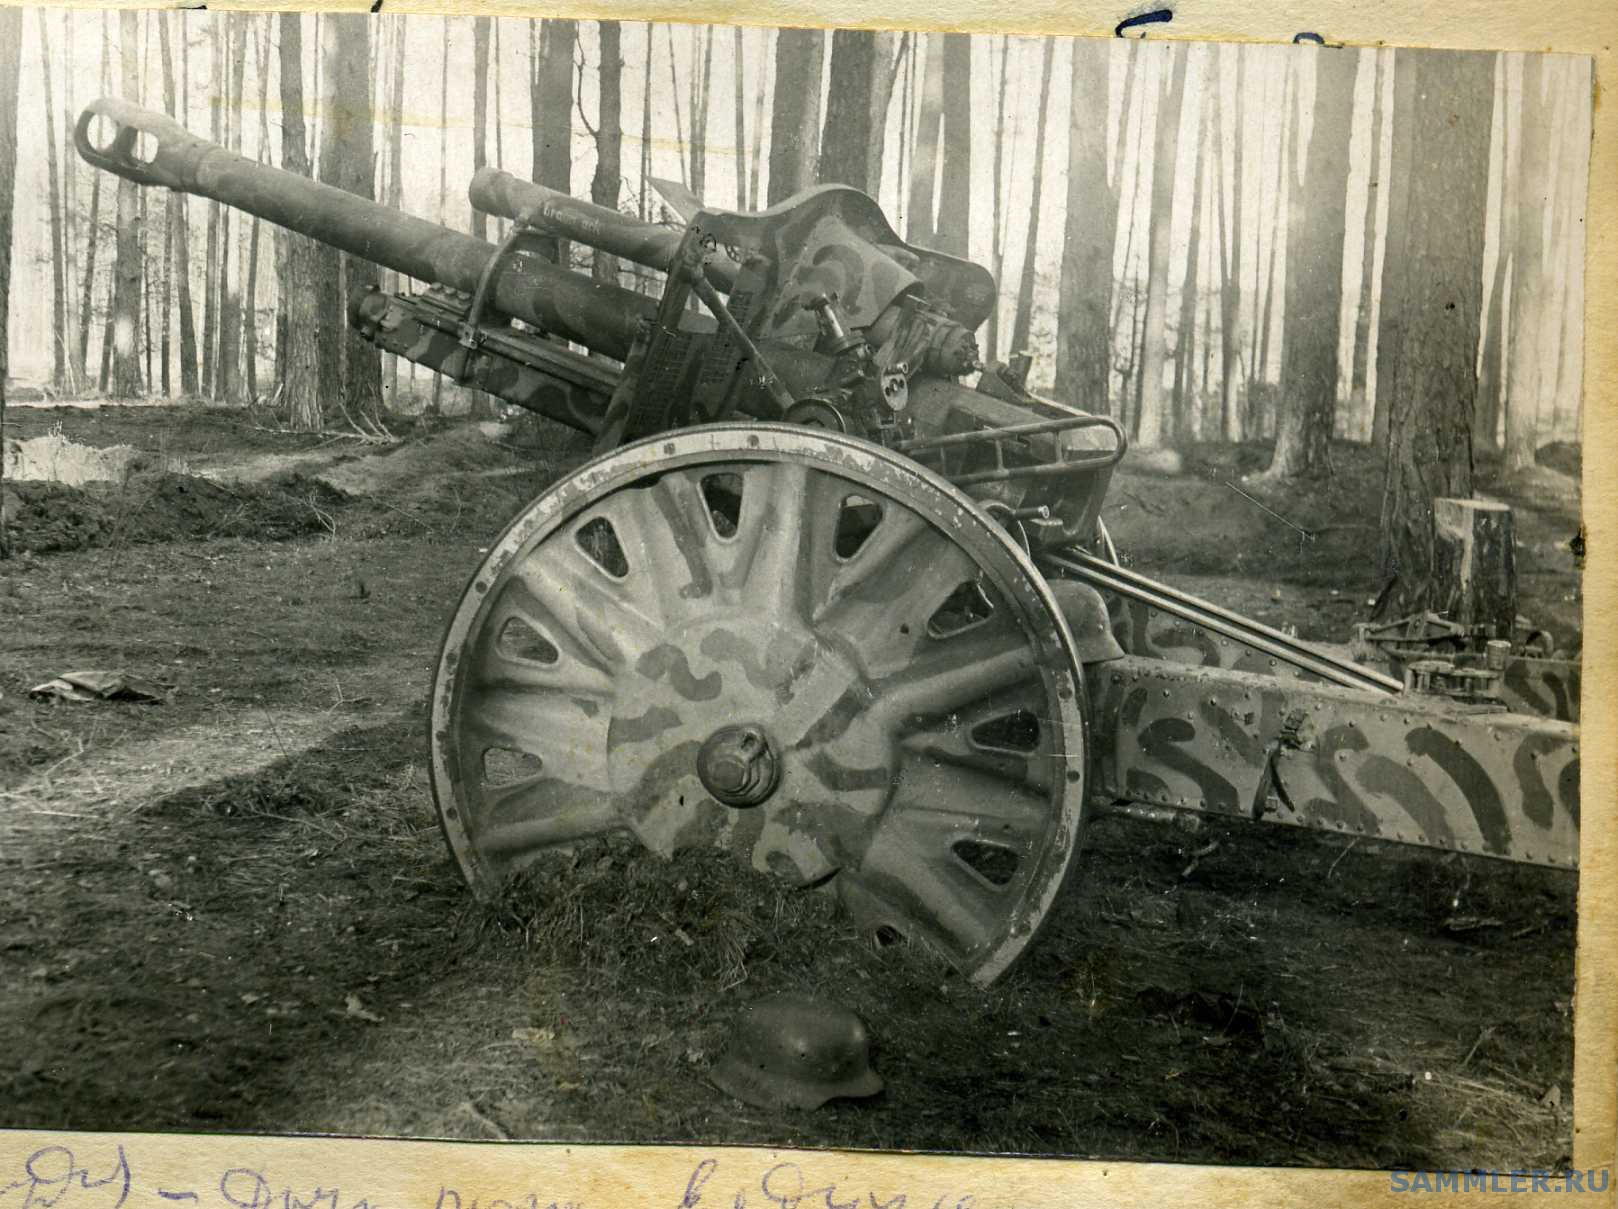 Гаубичный артиллерийский полк. LEFH 18 гаубица. Германия: 105-мм гаубица lefh18. 105-Мм гаубица LEFH 18. Немецкая легкая Полевая гаубица 10.5 cm LEFH 18m.